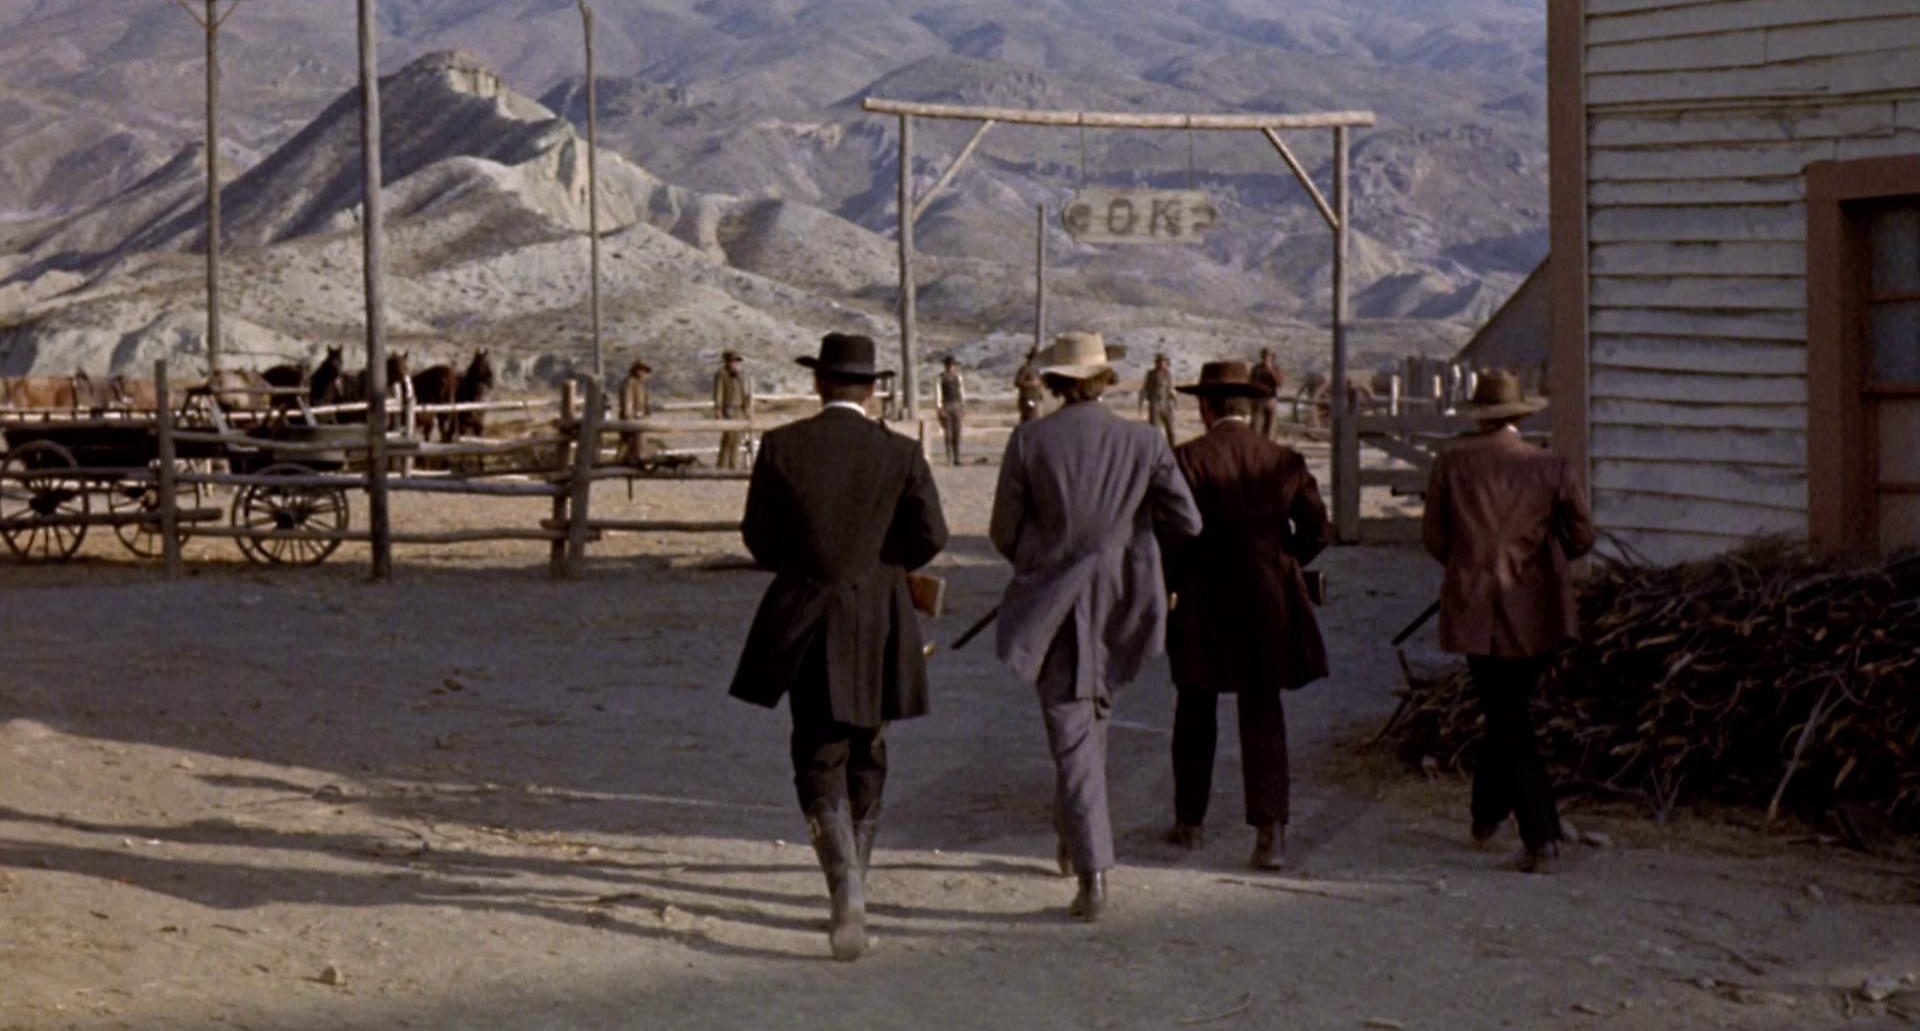 Die Earp-Fraktion marschiert auf die Pferdekoppel zu, in der in einer Reihe mehrere Männer warten; über dem Eingang hängt ein kleines Schild mit der Auschrift „O K“.